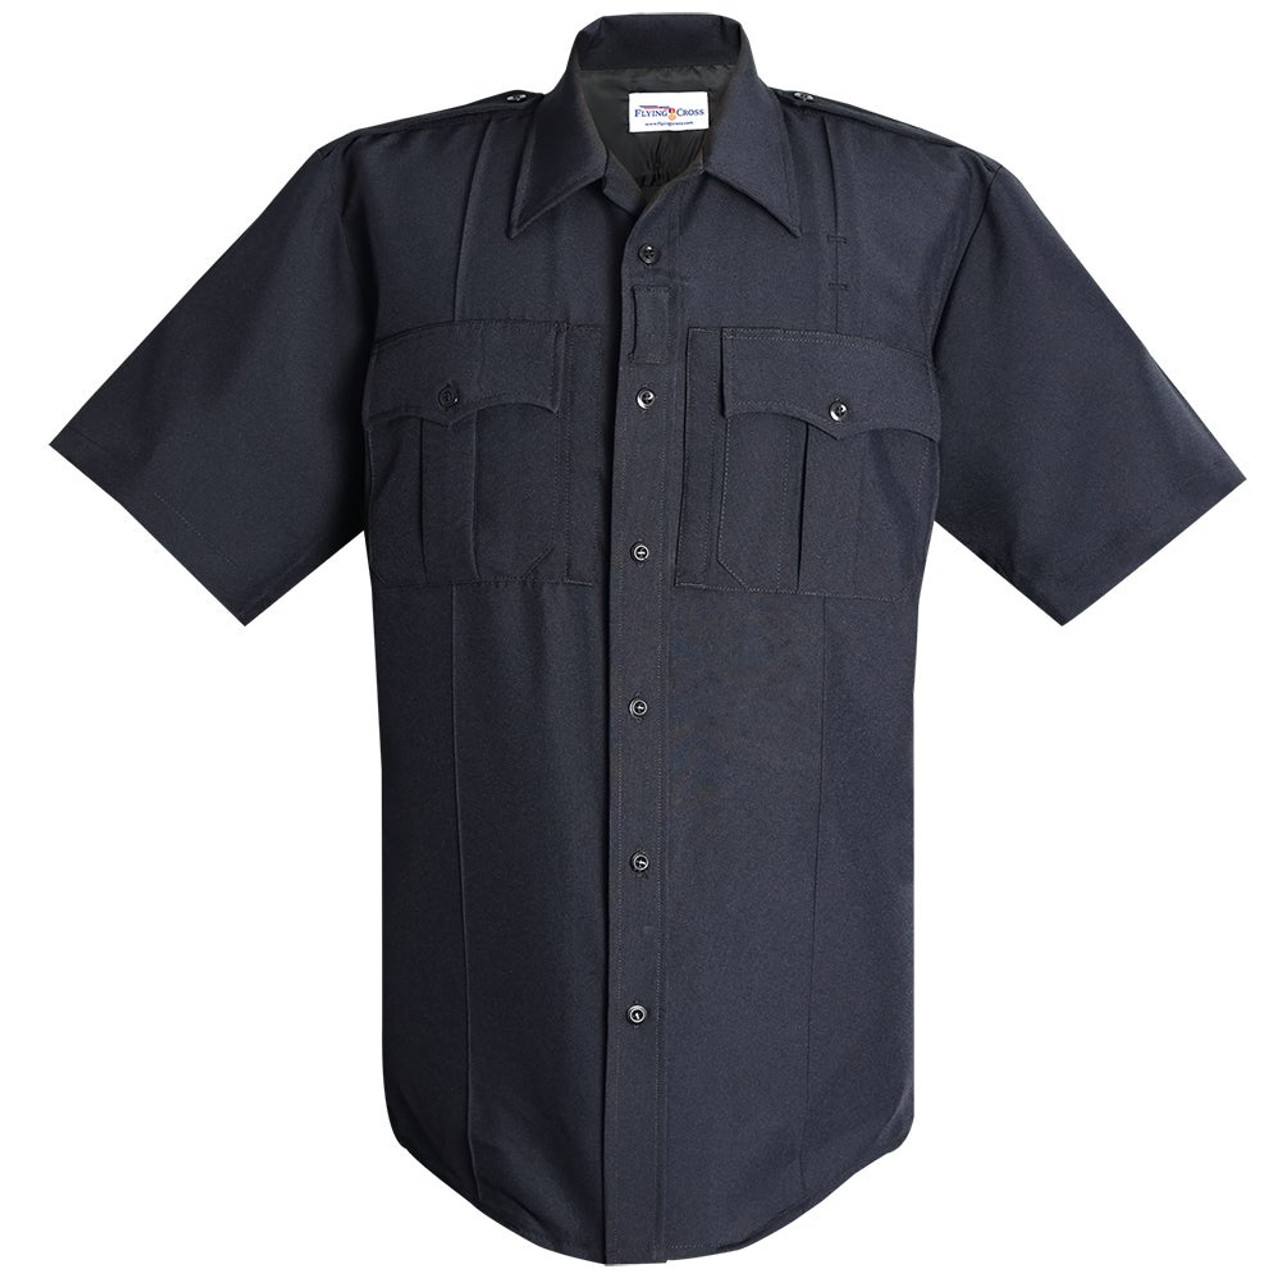 First Class 100% Polyester Long Sleeve Zippered Uniform Shirt